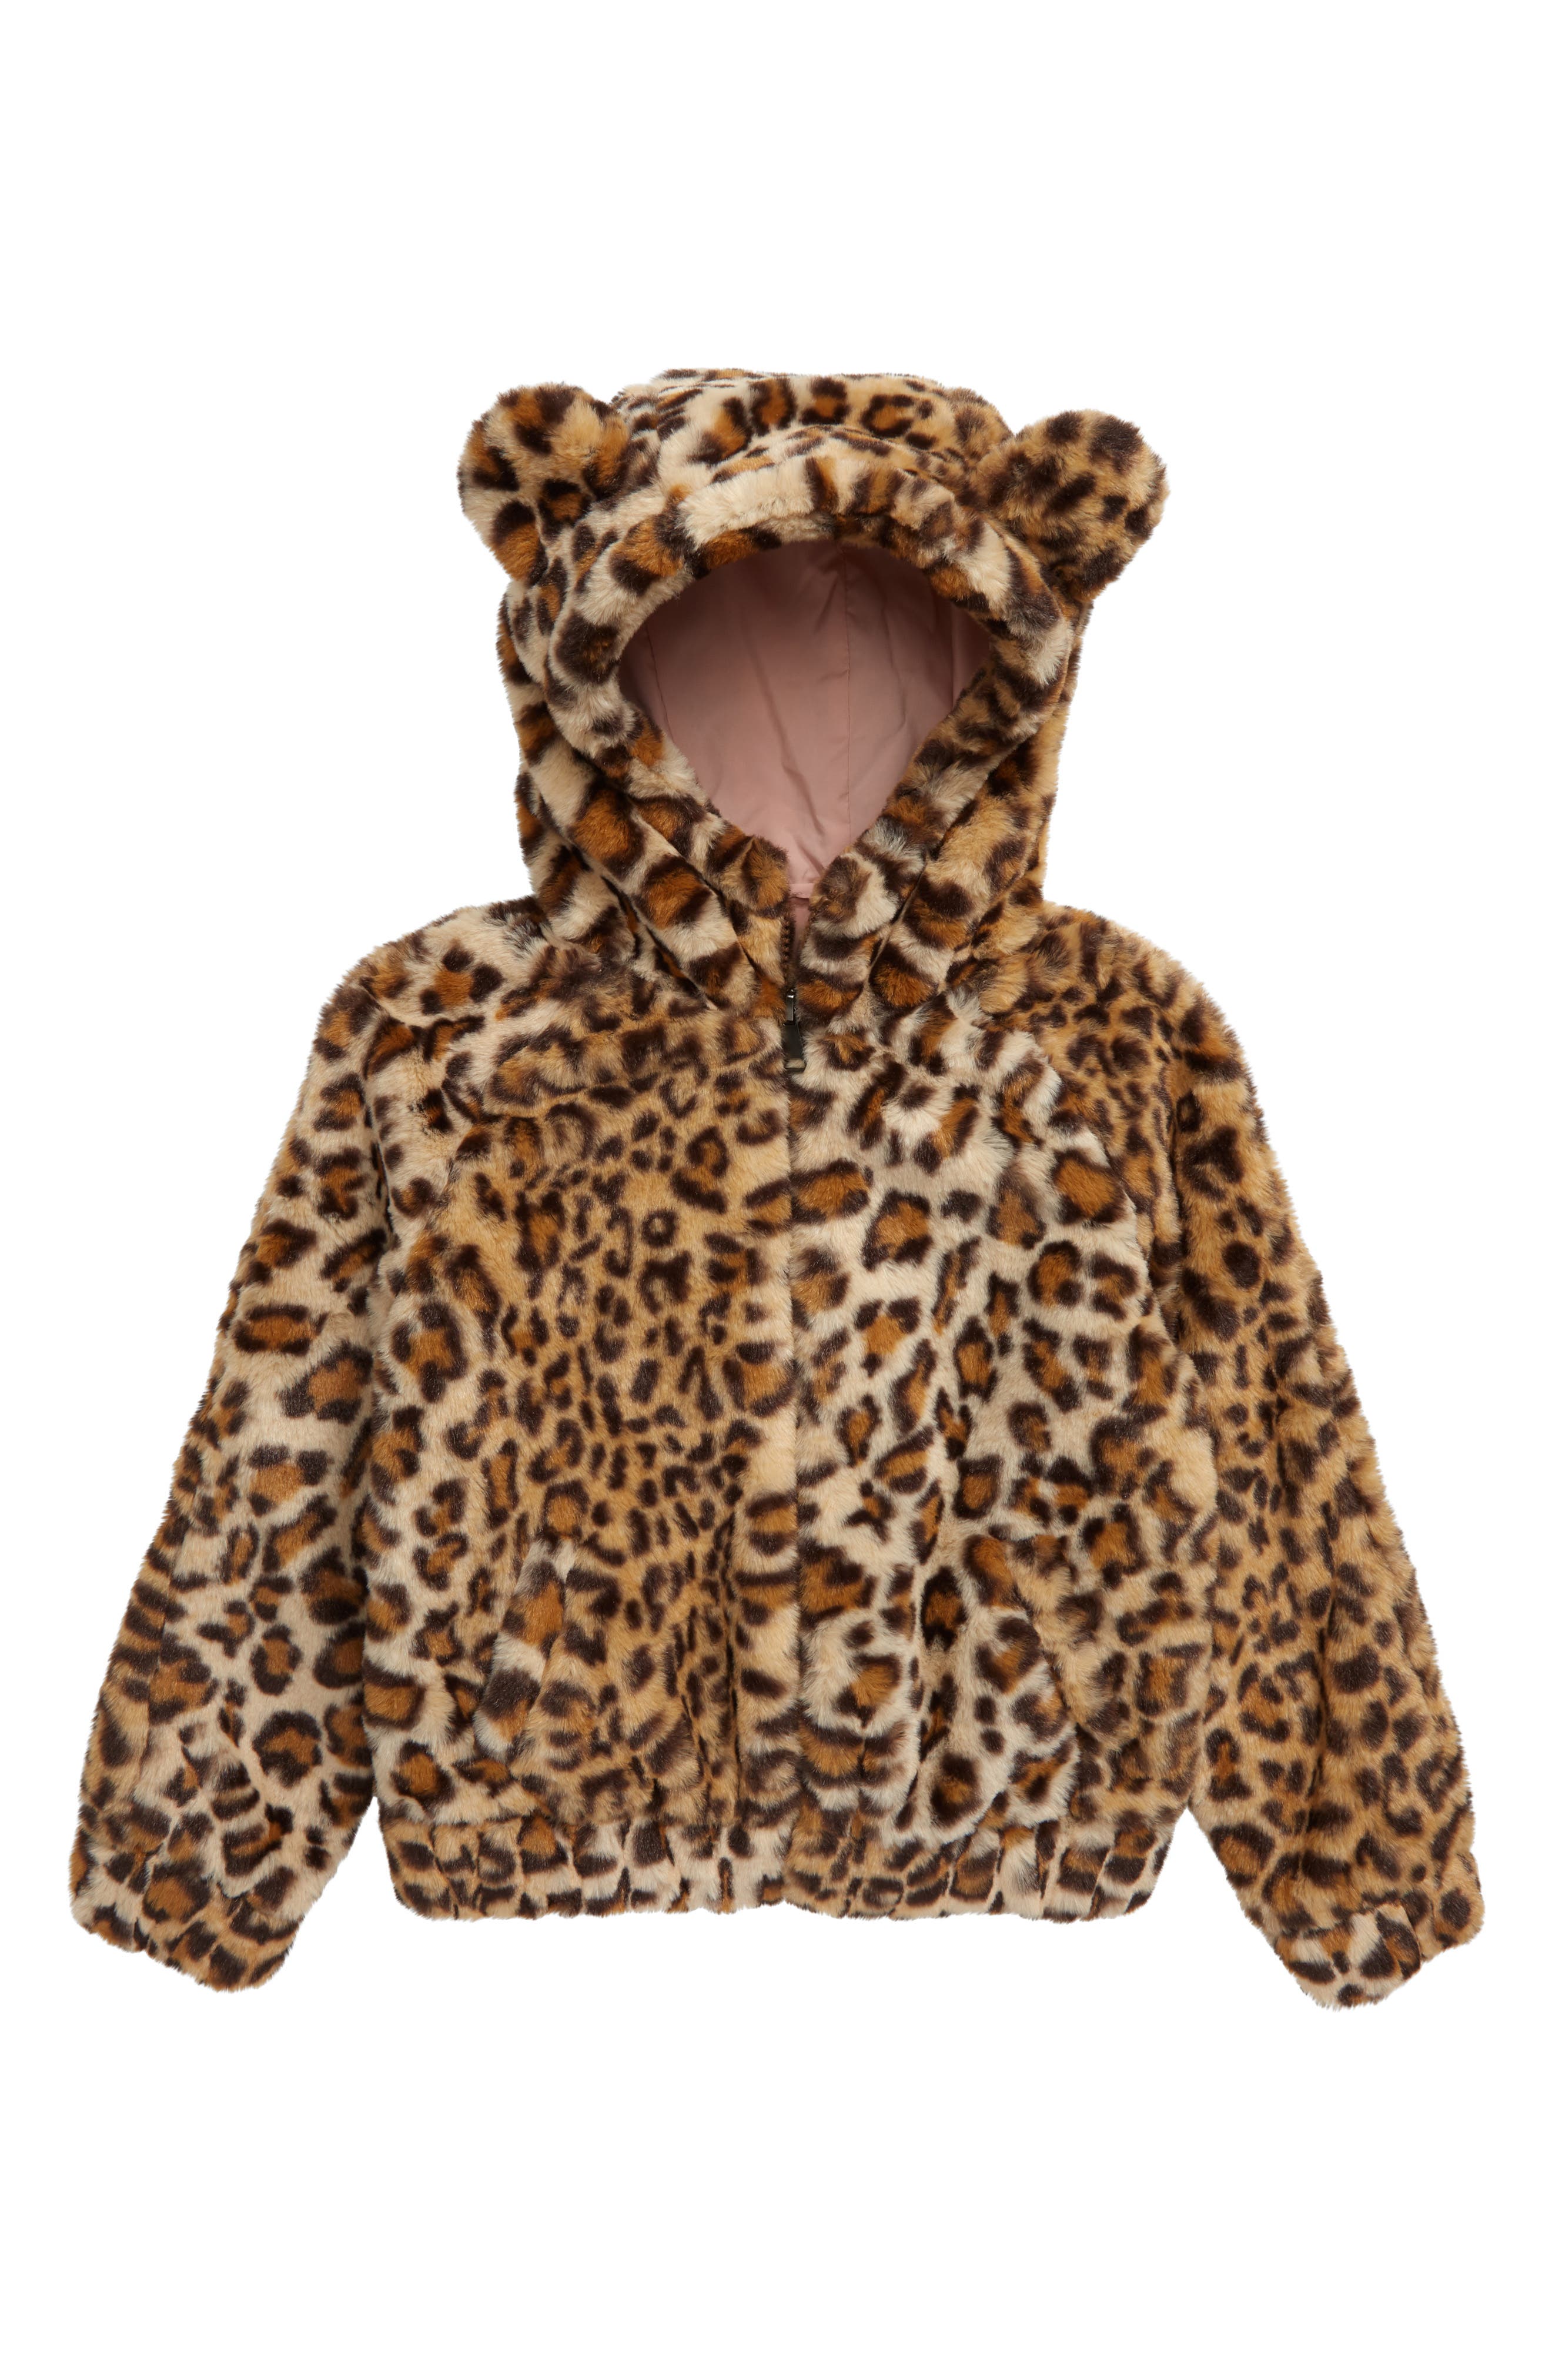 animal print jacket for girls. Children's fleece jacket baby fall winter jacket warm black jacket baby Clothing Unisex Kids Clothing Jackets & Coats 